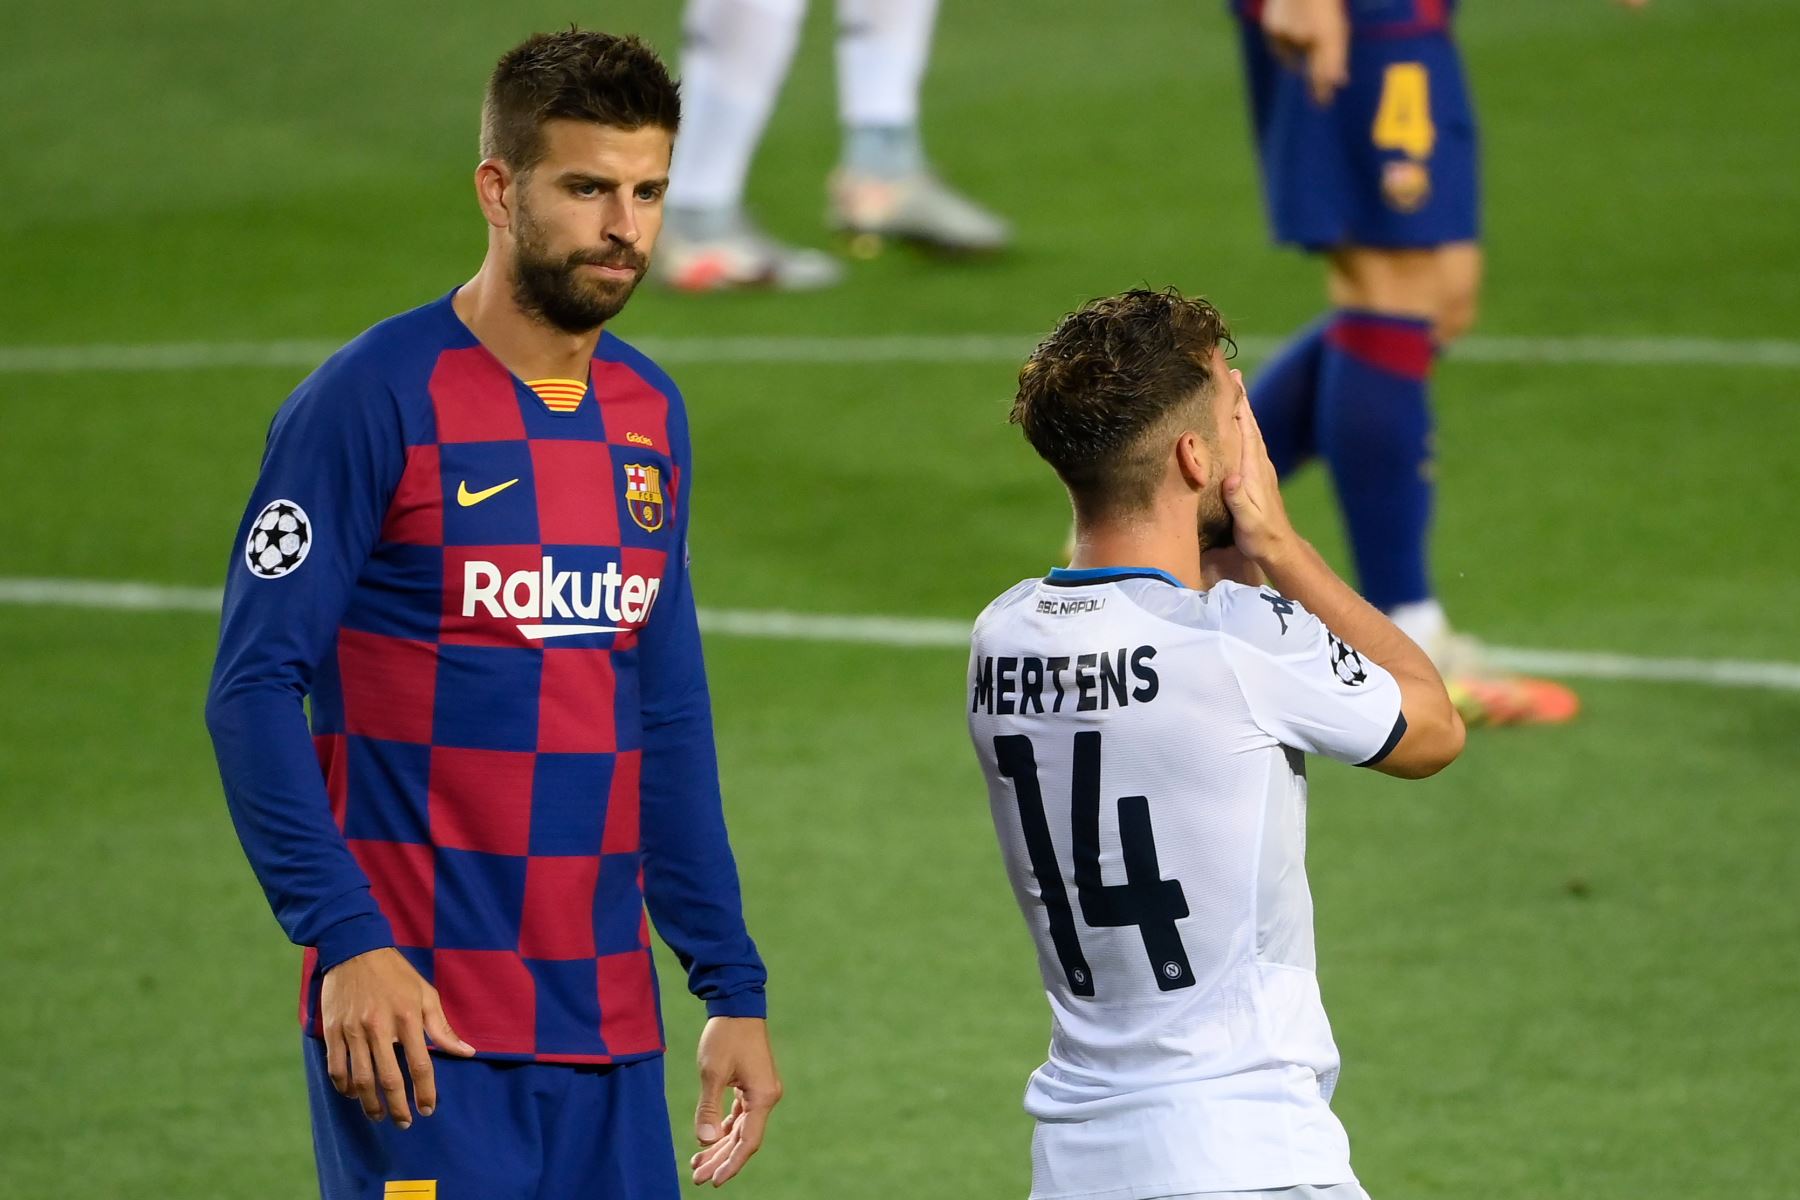 El delantero belga del Napoli, Dries Mertens, reacciona después de no poder marcar un gol tras marcación del defensa español del Barcelona, Gerard Piqué. Foto: AFP